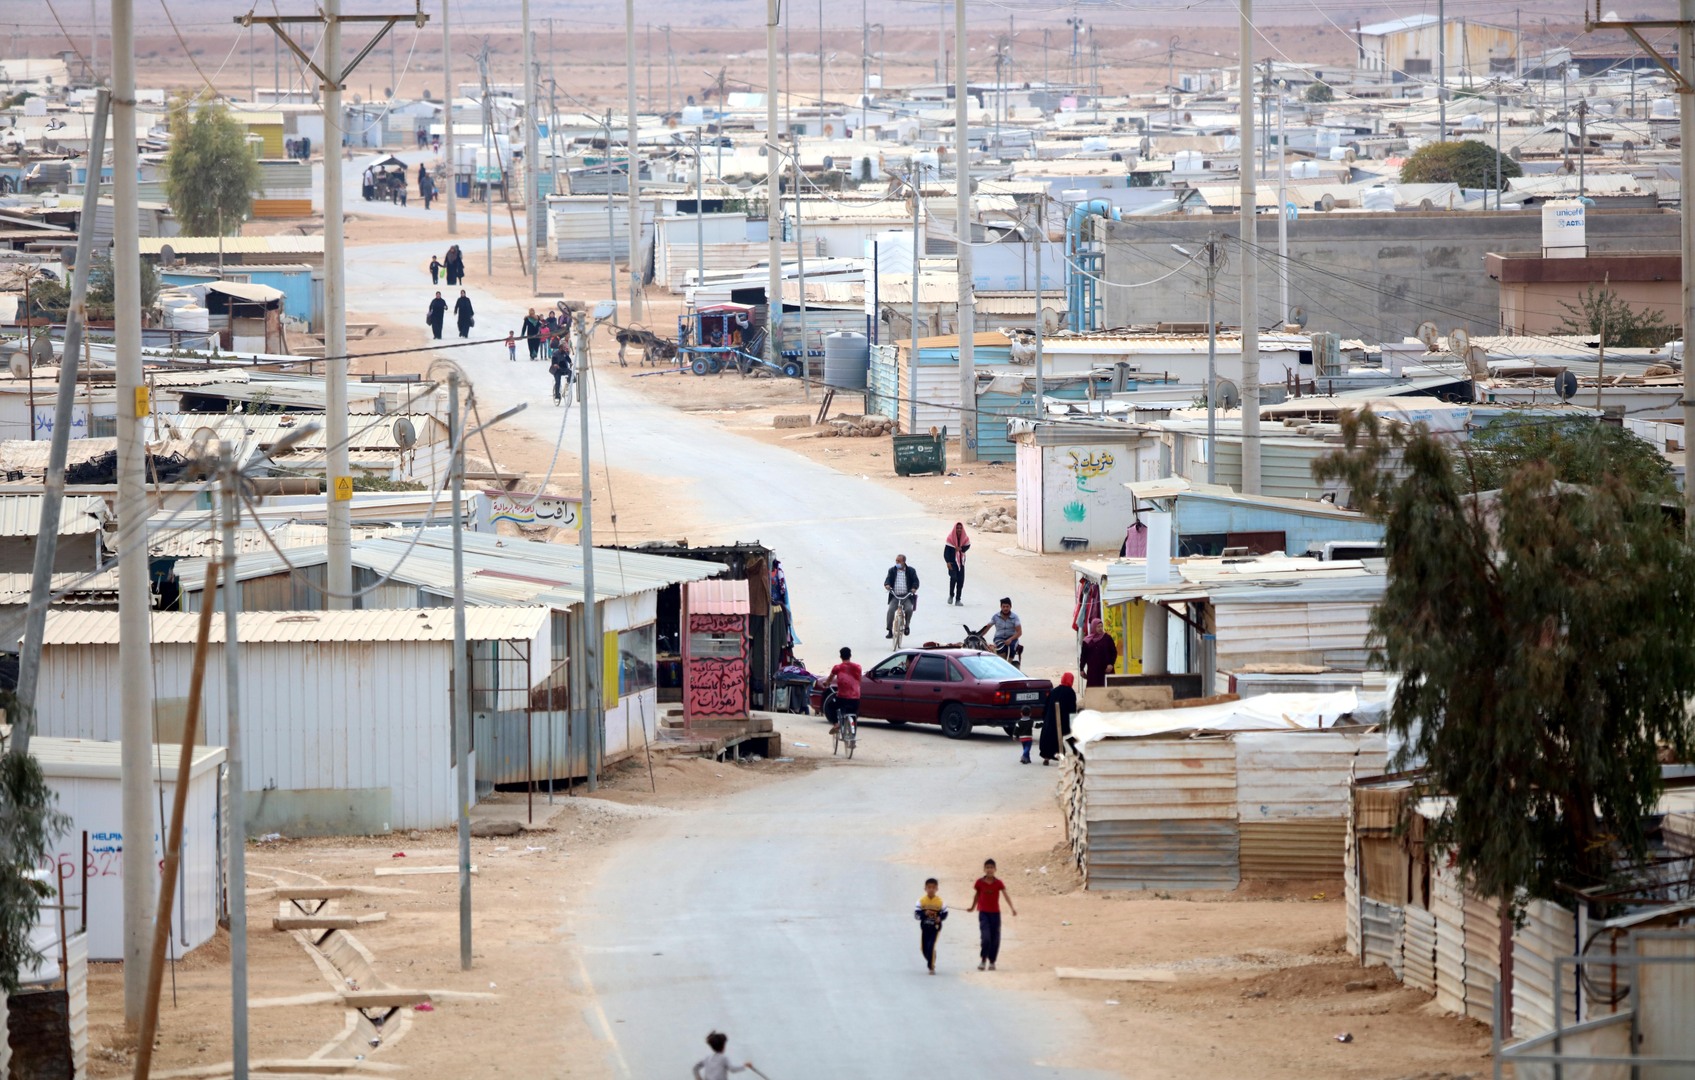 مخيم الزعتري للاجئين في الأردن